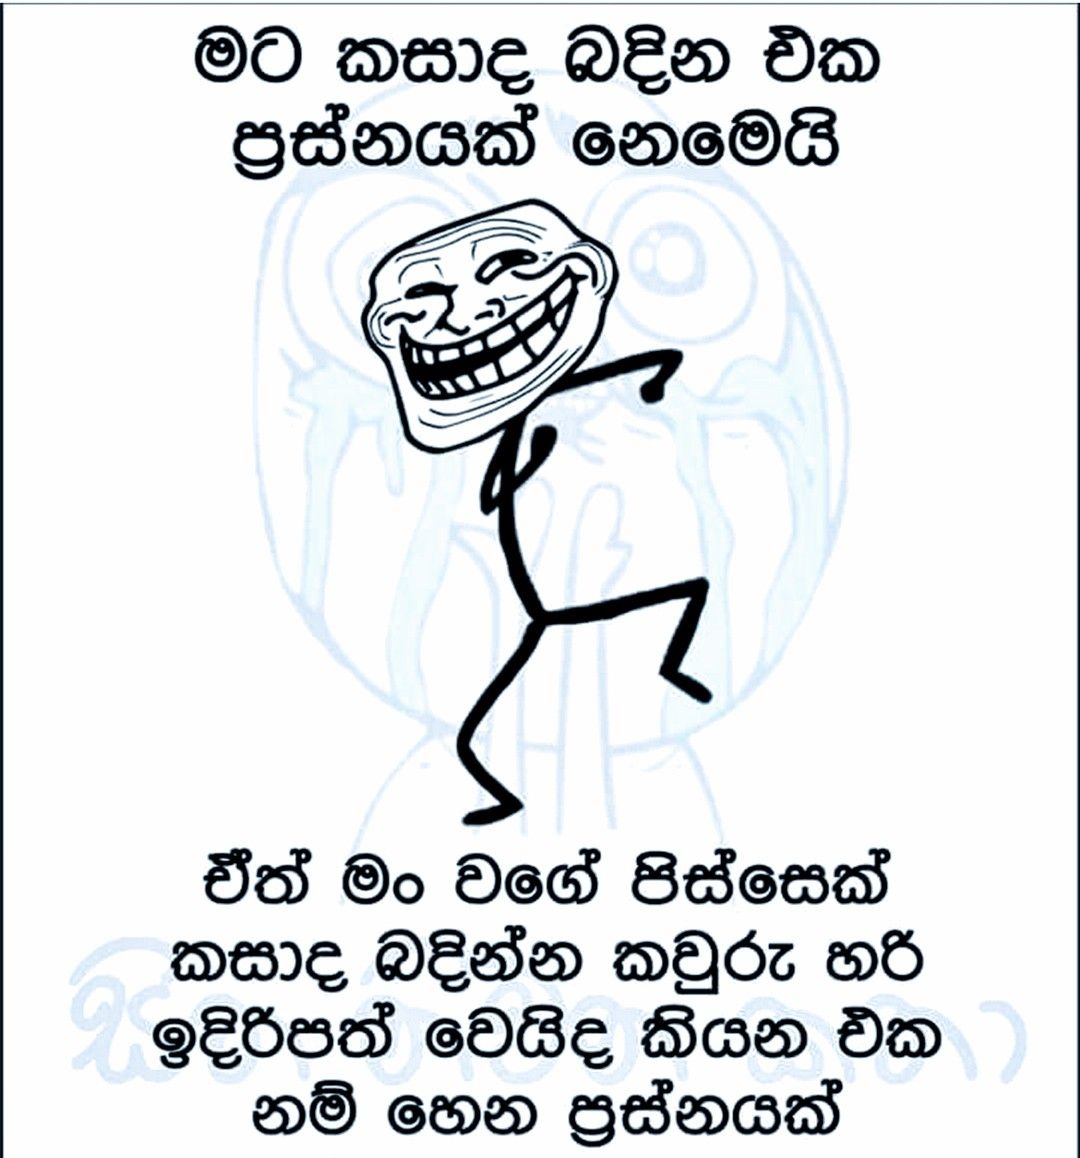 Sinhala Joke Wallpaper - Troll Face - HD Wallpaper 